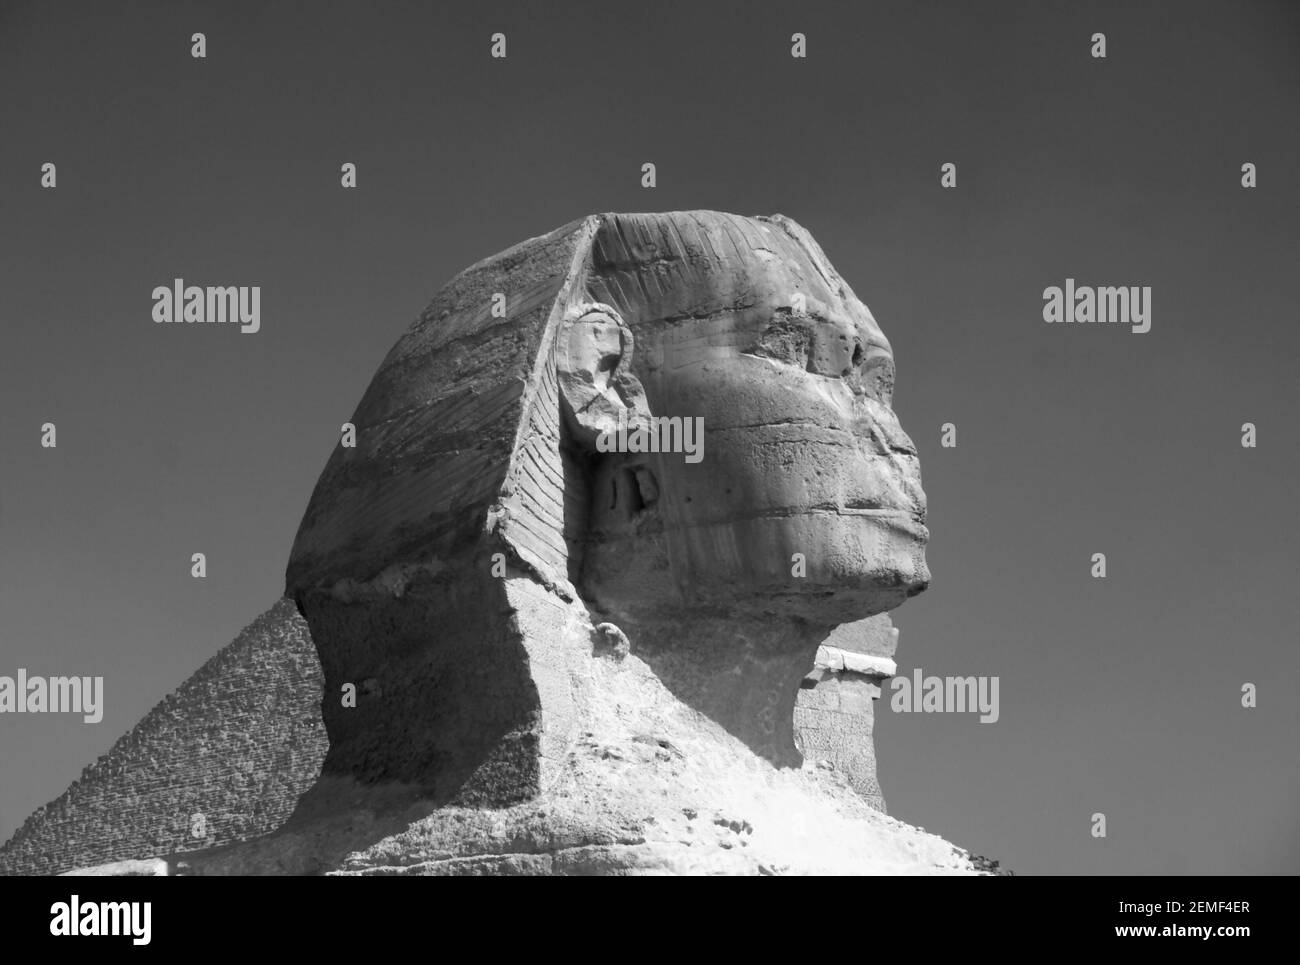 Monochrom, schwarz-weiß, Bild der Großen Sphinx mit der Großen Pyramide von Khufu (Cheops) dahinter, Gizeh, Ägypten Stockfoto